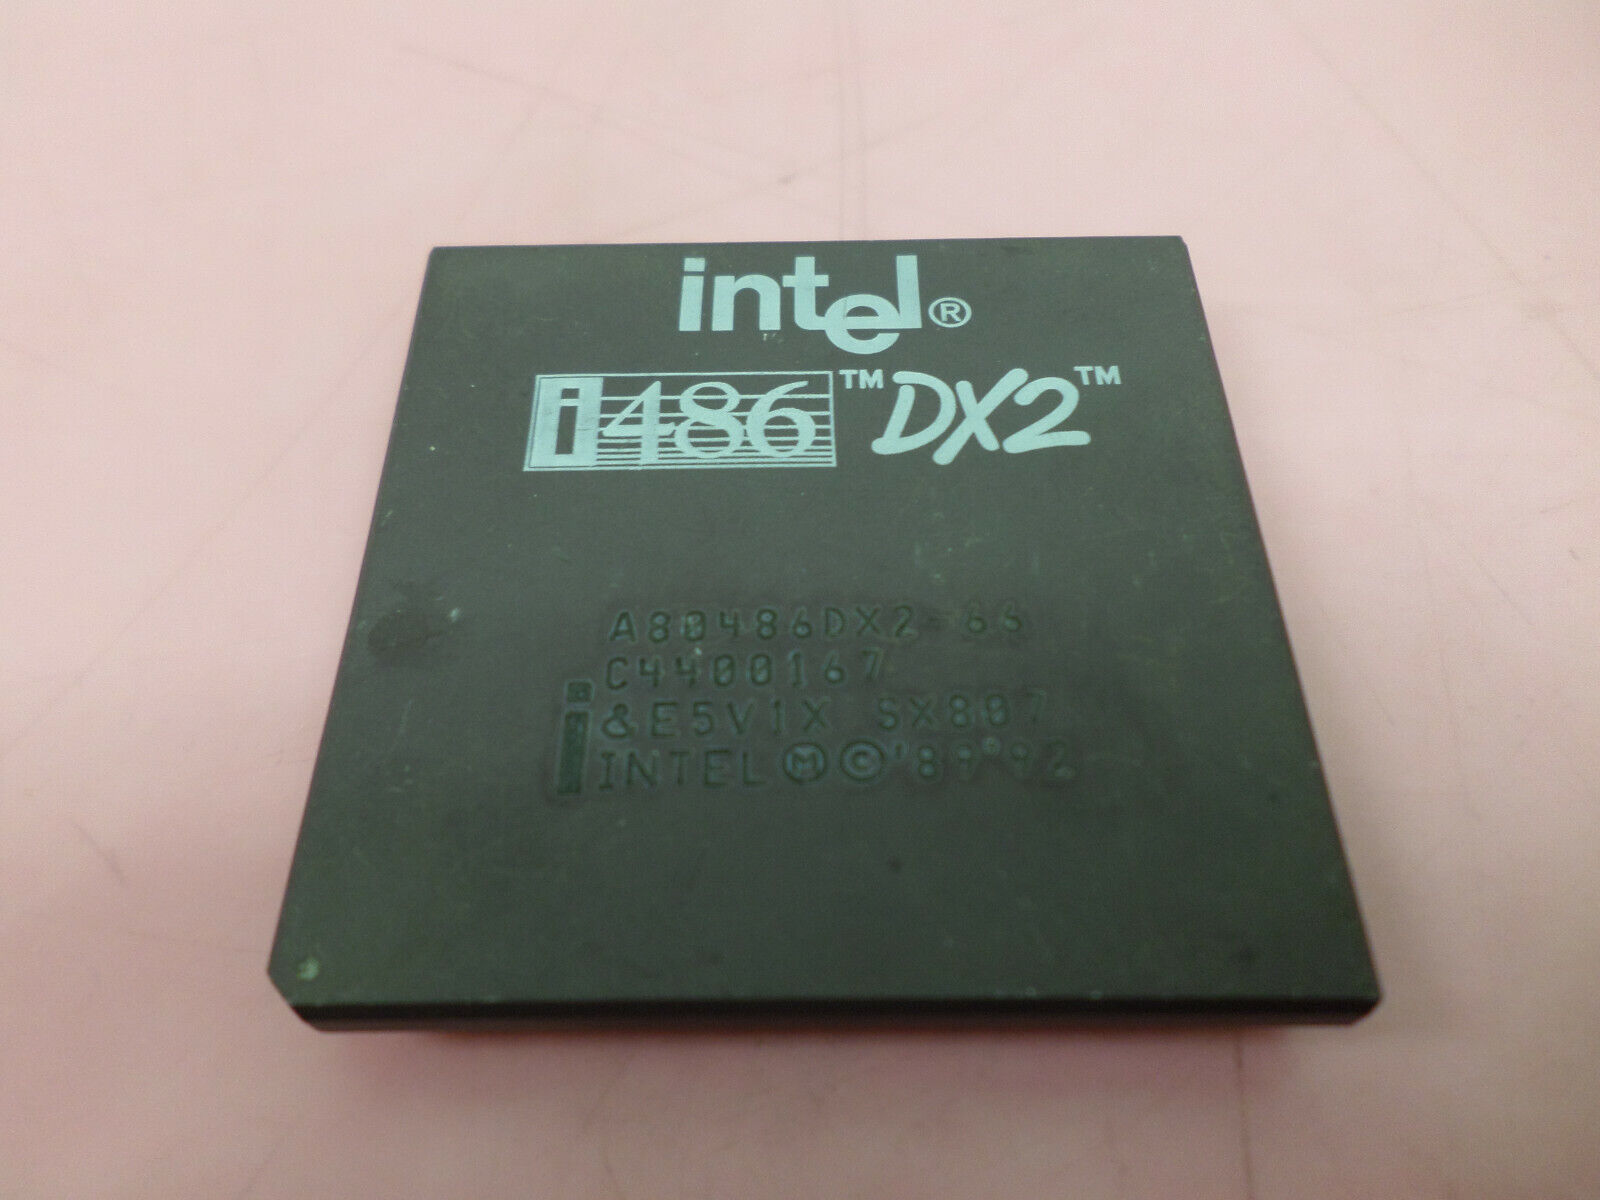 Vintage Intel i486DX2 A80486DX2-66 RARE C4400167 & E5V1X sx807 GOLD Cap and Pin